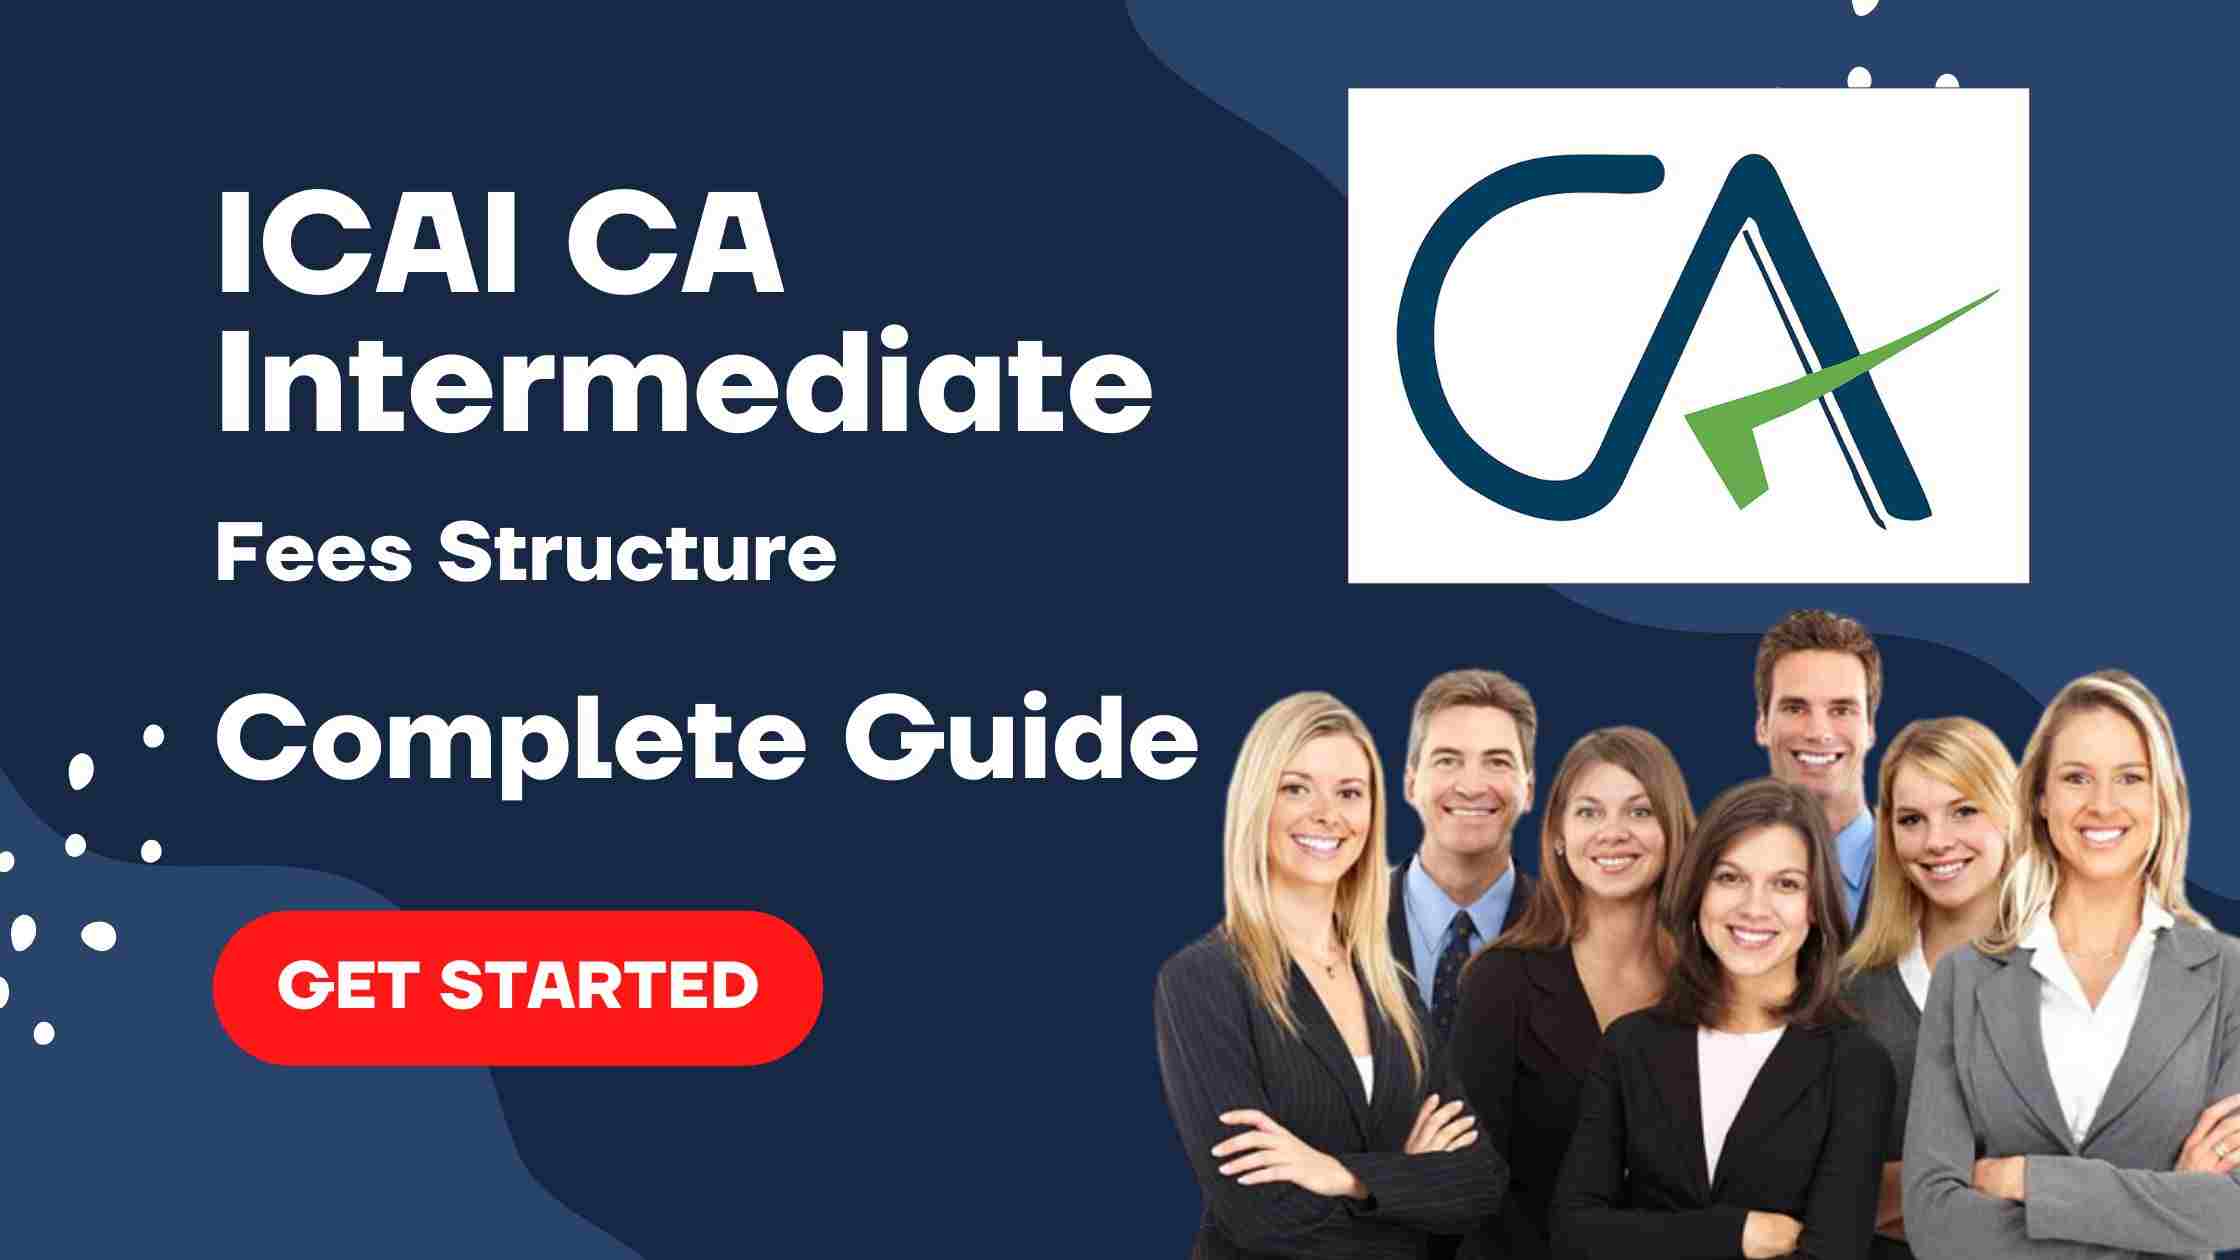 ICAI CA Intermediate fees structure